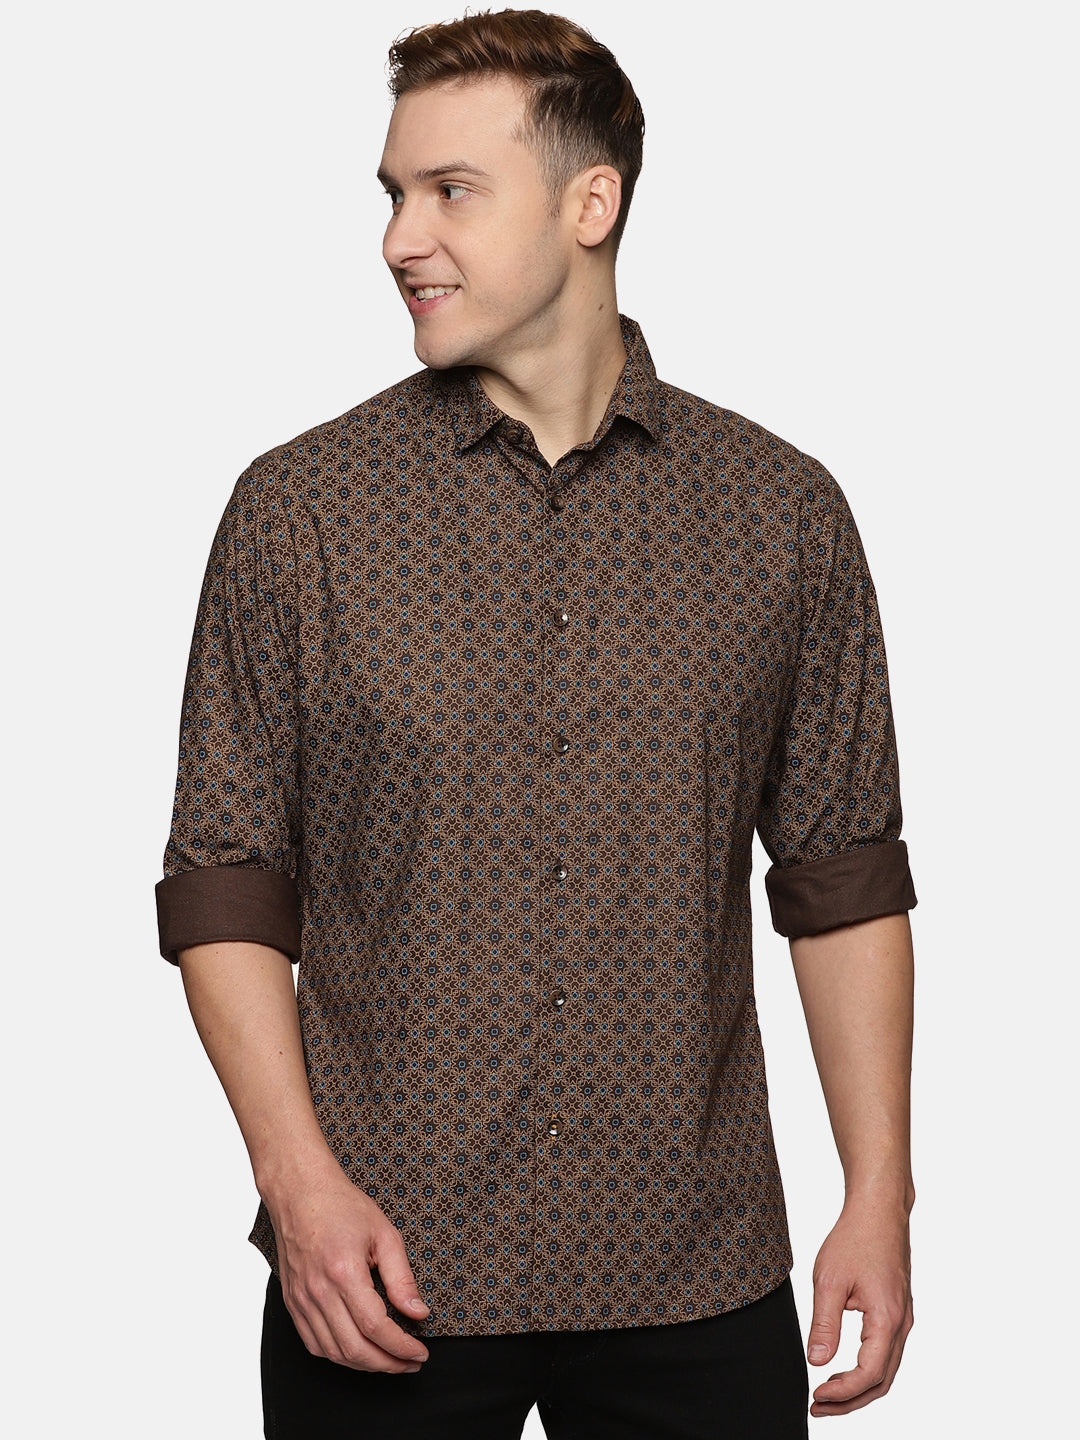 Men Brown Printed Slim Fit Casual Shirt, Men's Full Sleeve Cotton Shirt